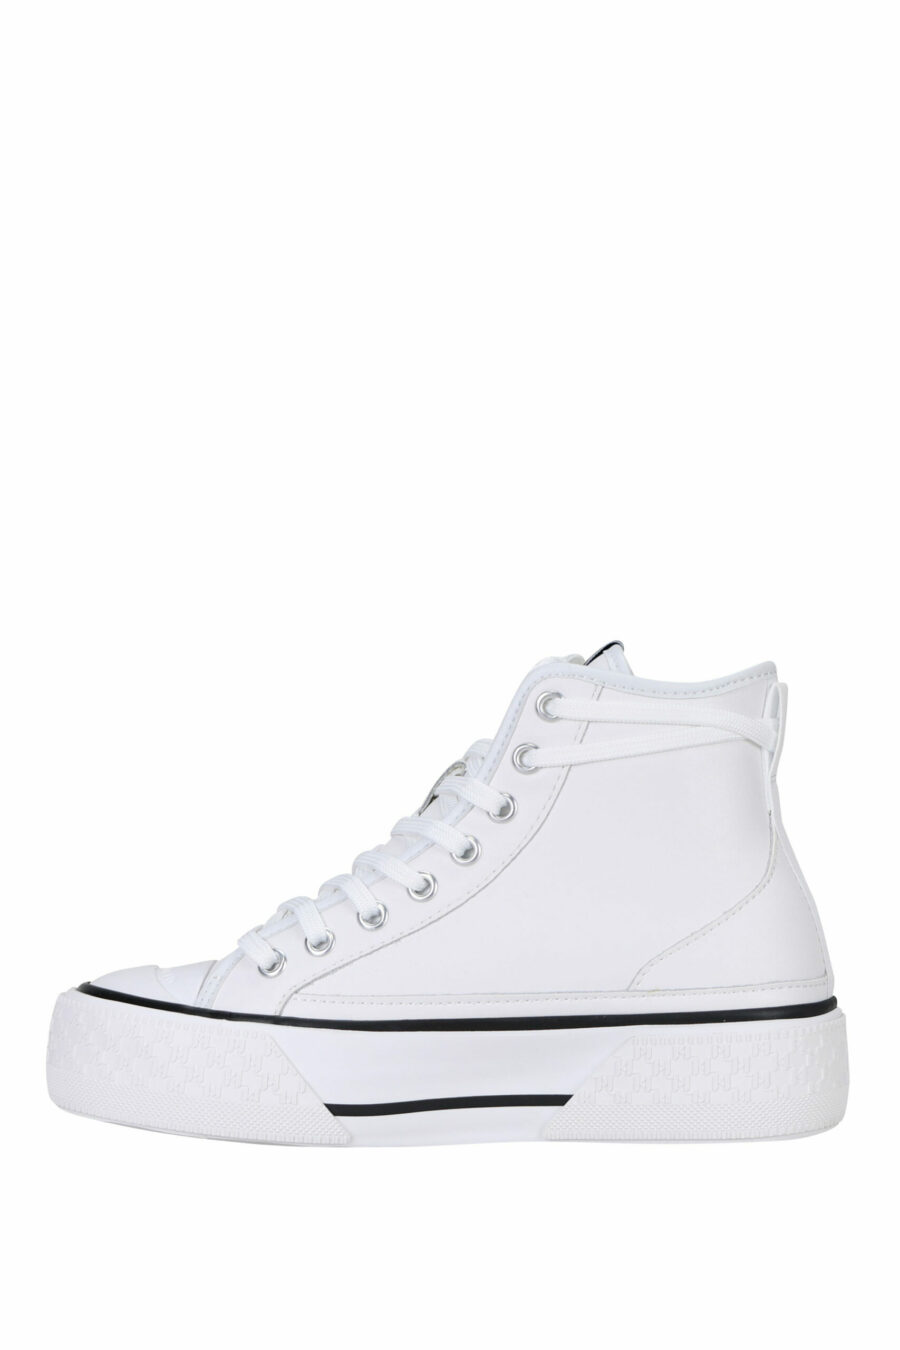 Zapatillas blancas altas de cuero con suela blanca y logo "karl" - 5059529322974 2 scaled